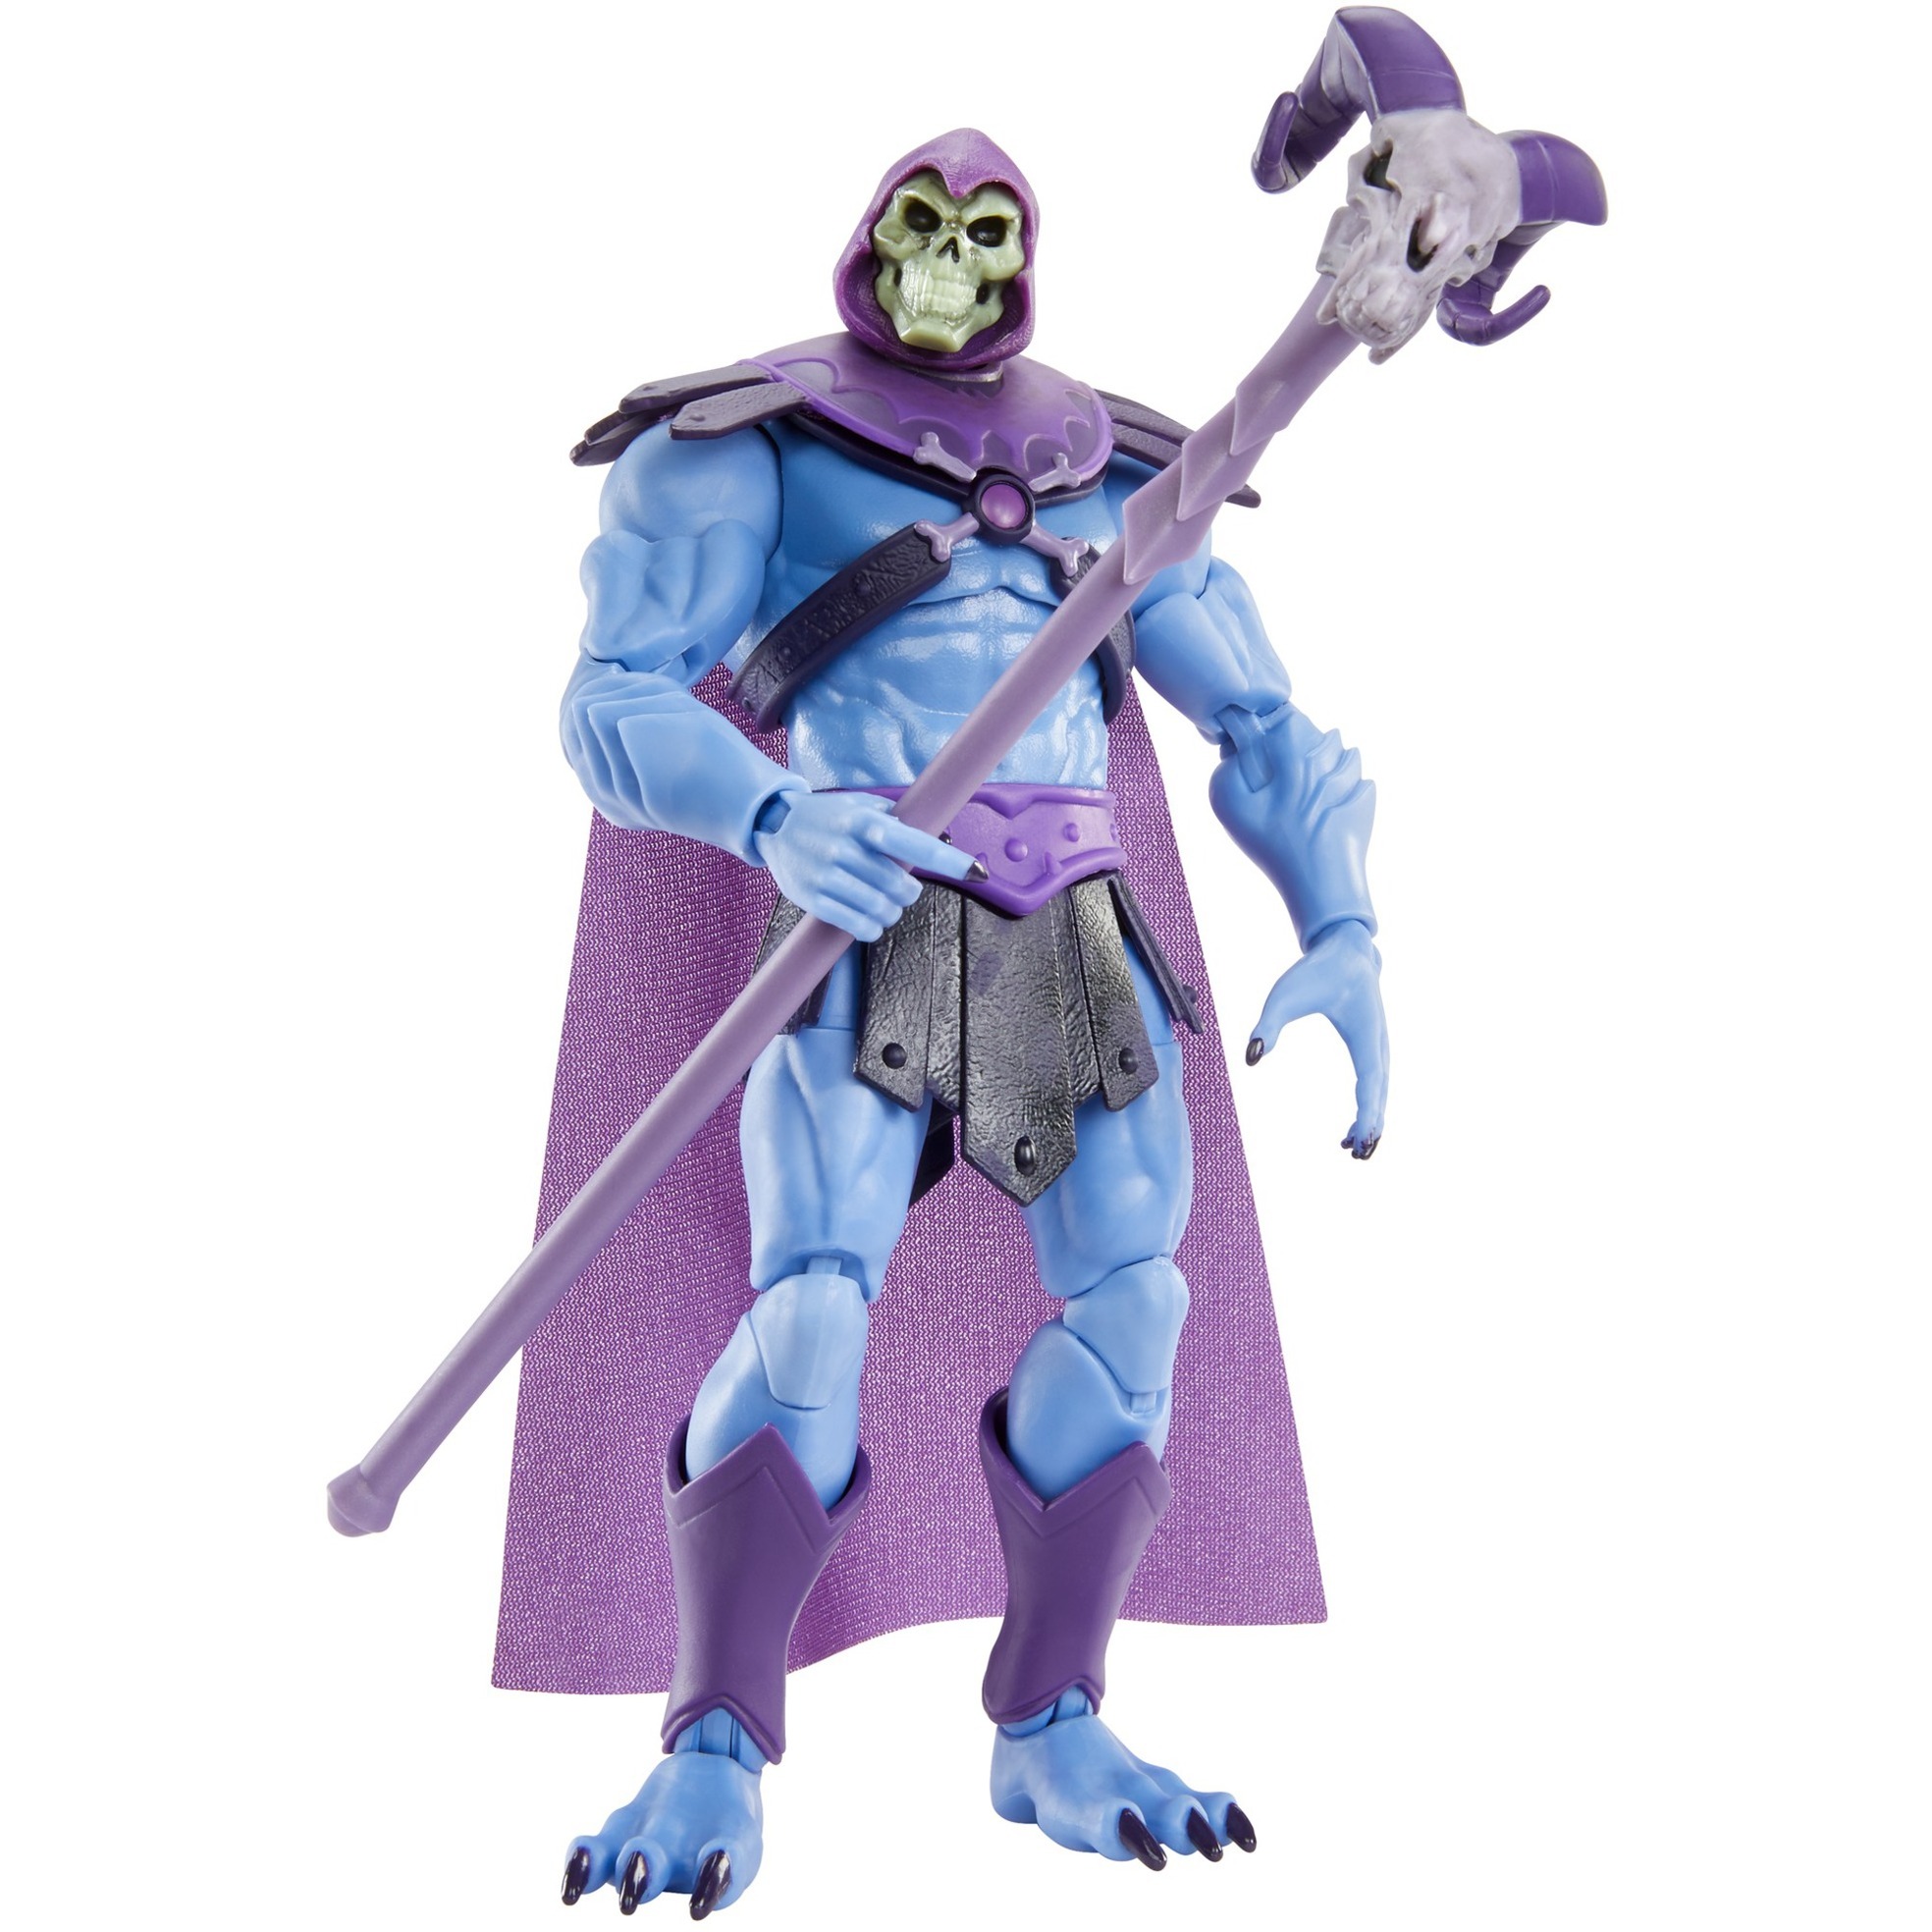 Image of Alternate - Masters of the Universe Masterverse Skeletor 18cm große Actionfigur für alle MOTU Sammler, Spielfigur online einkaufen bei Alternate